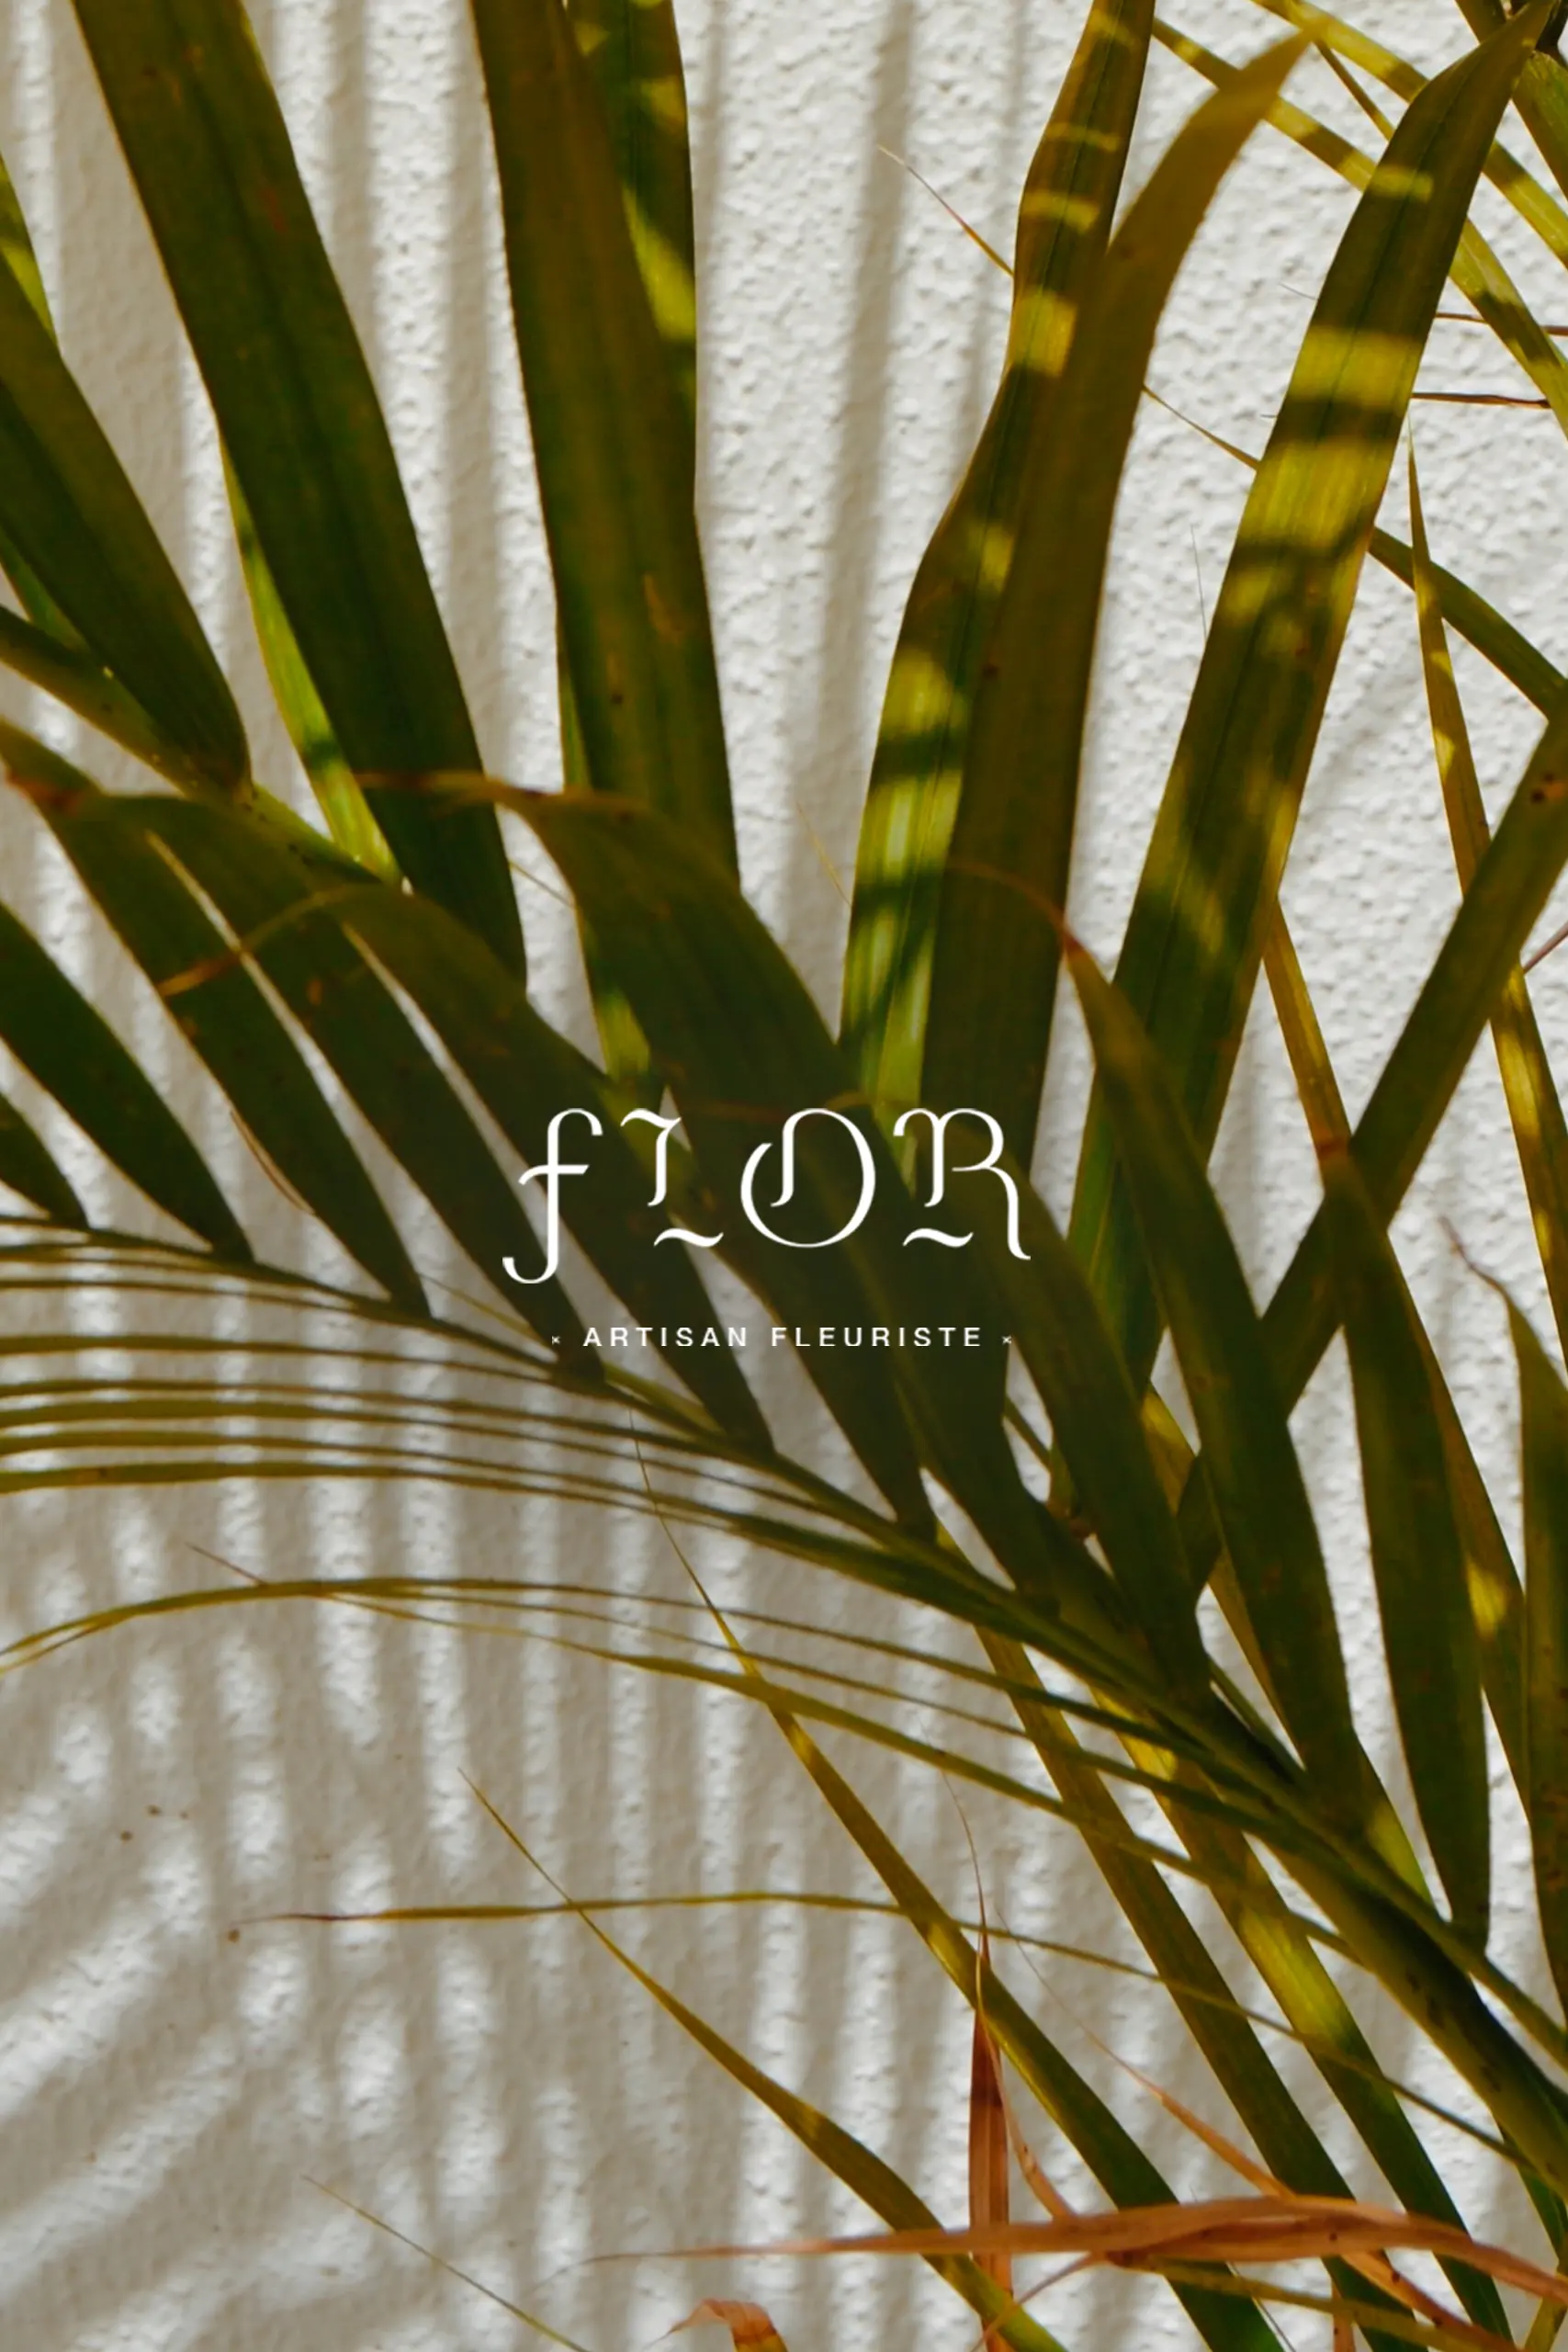 Logo blanc du fleuriste Flor en arrière plan on retrouve une photo de feuille de palmier